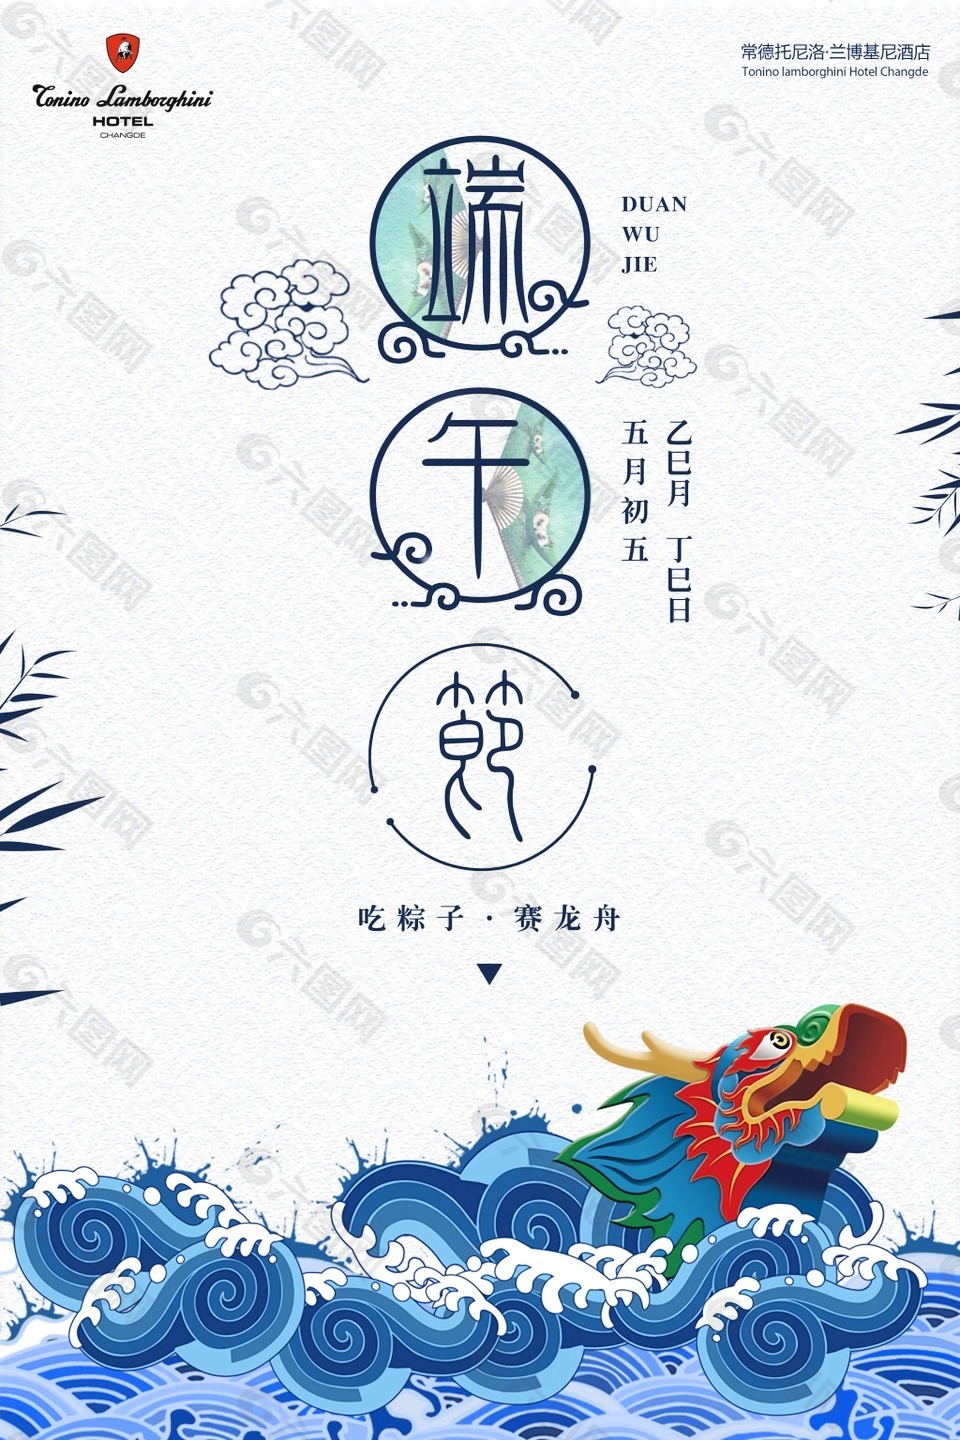 端午节吃粽子赛龙舟海报